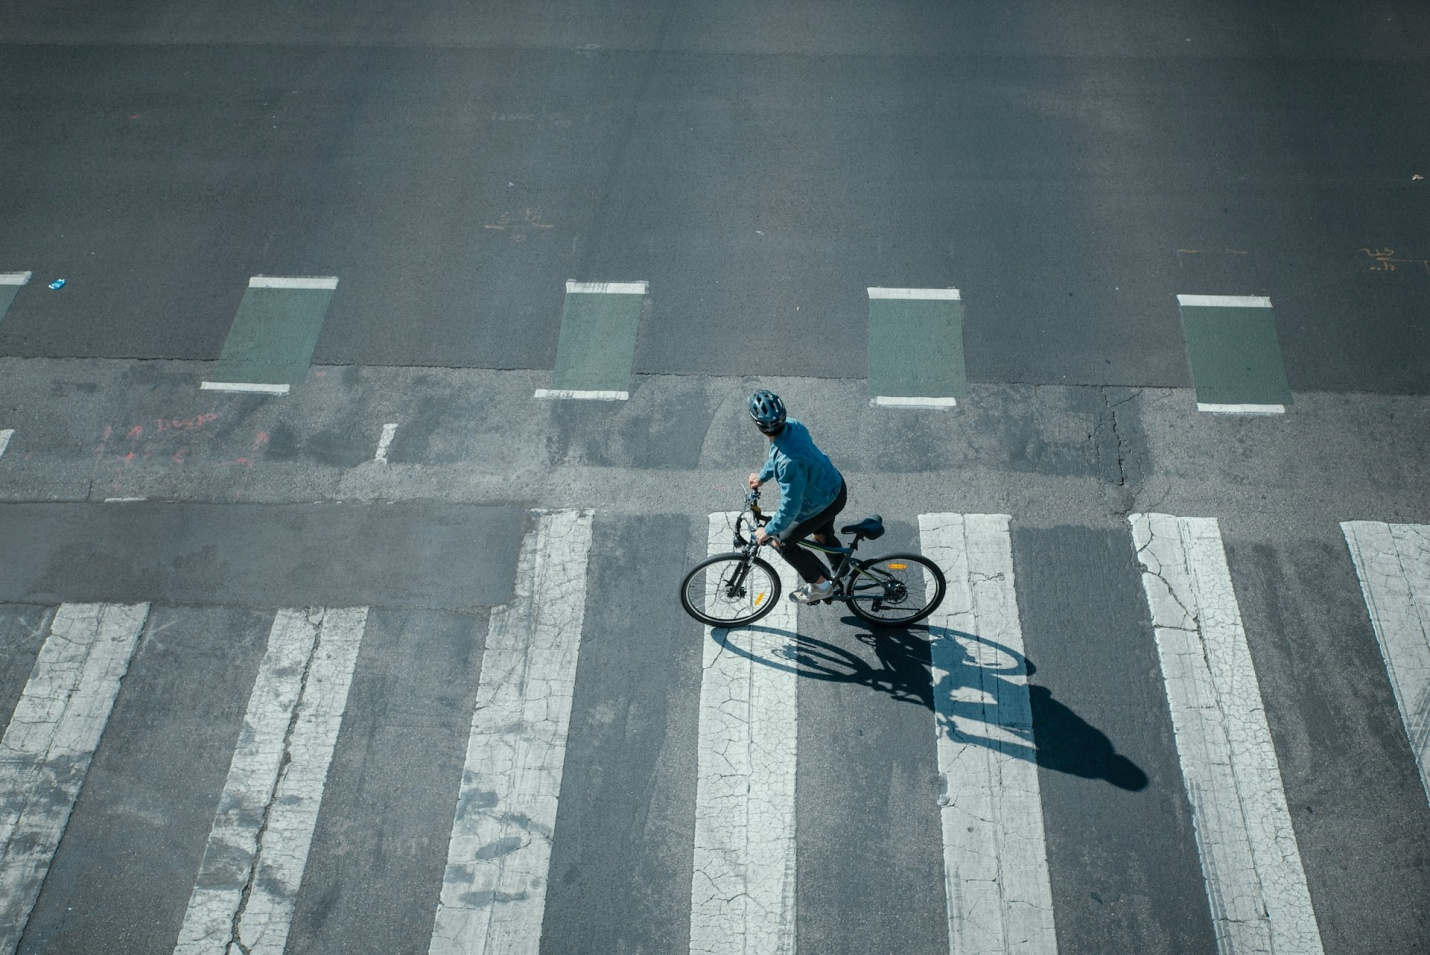 A person riding an e-bike on an asphalt road